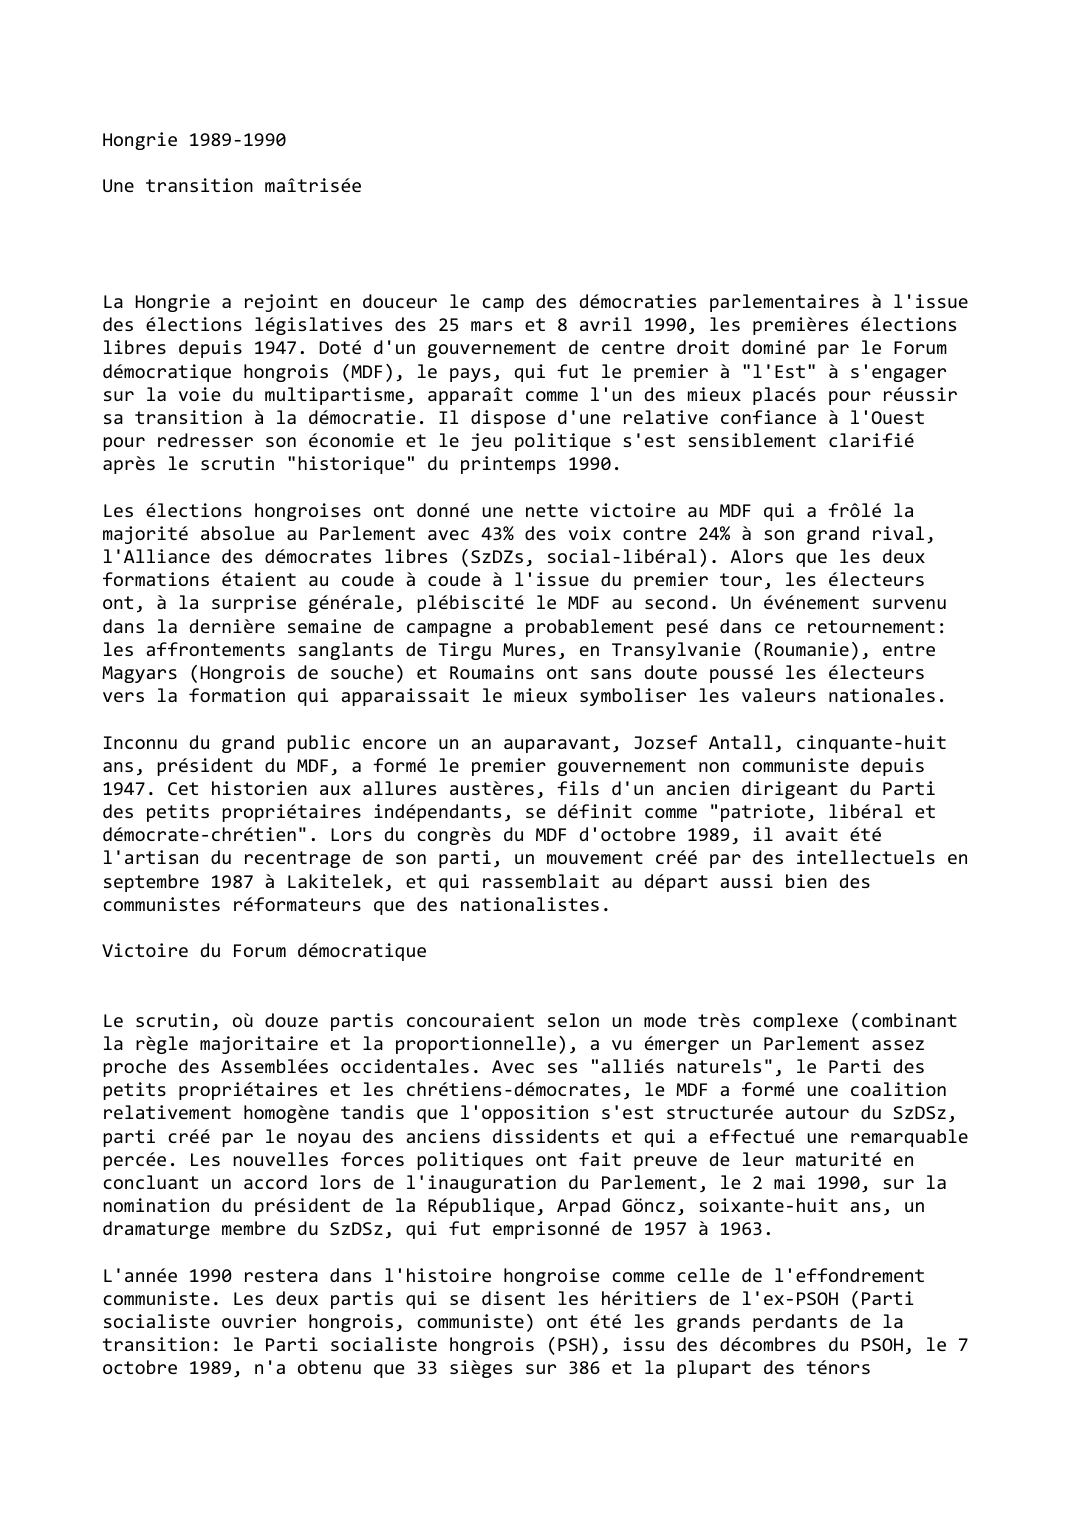 Prévisualisation du document Hongrie (1989-1990)

Une transition maîtrisée